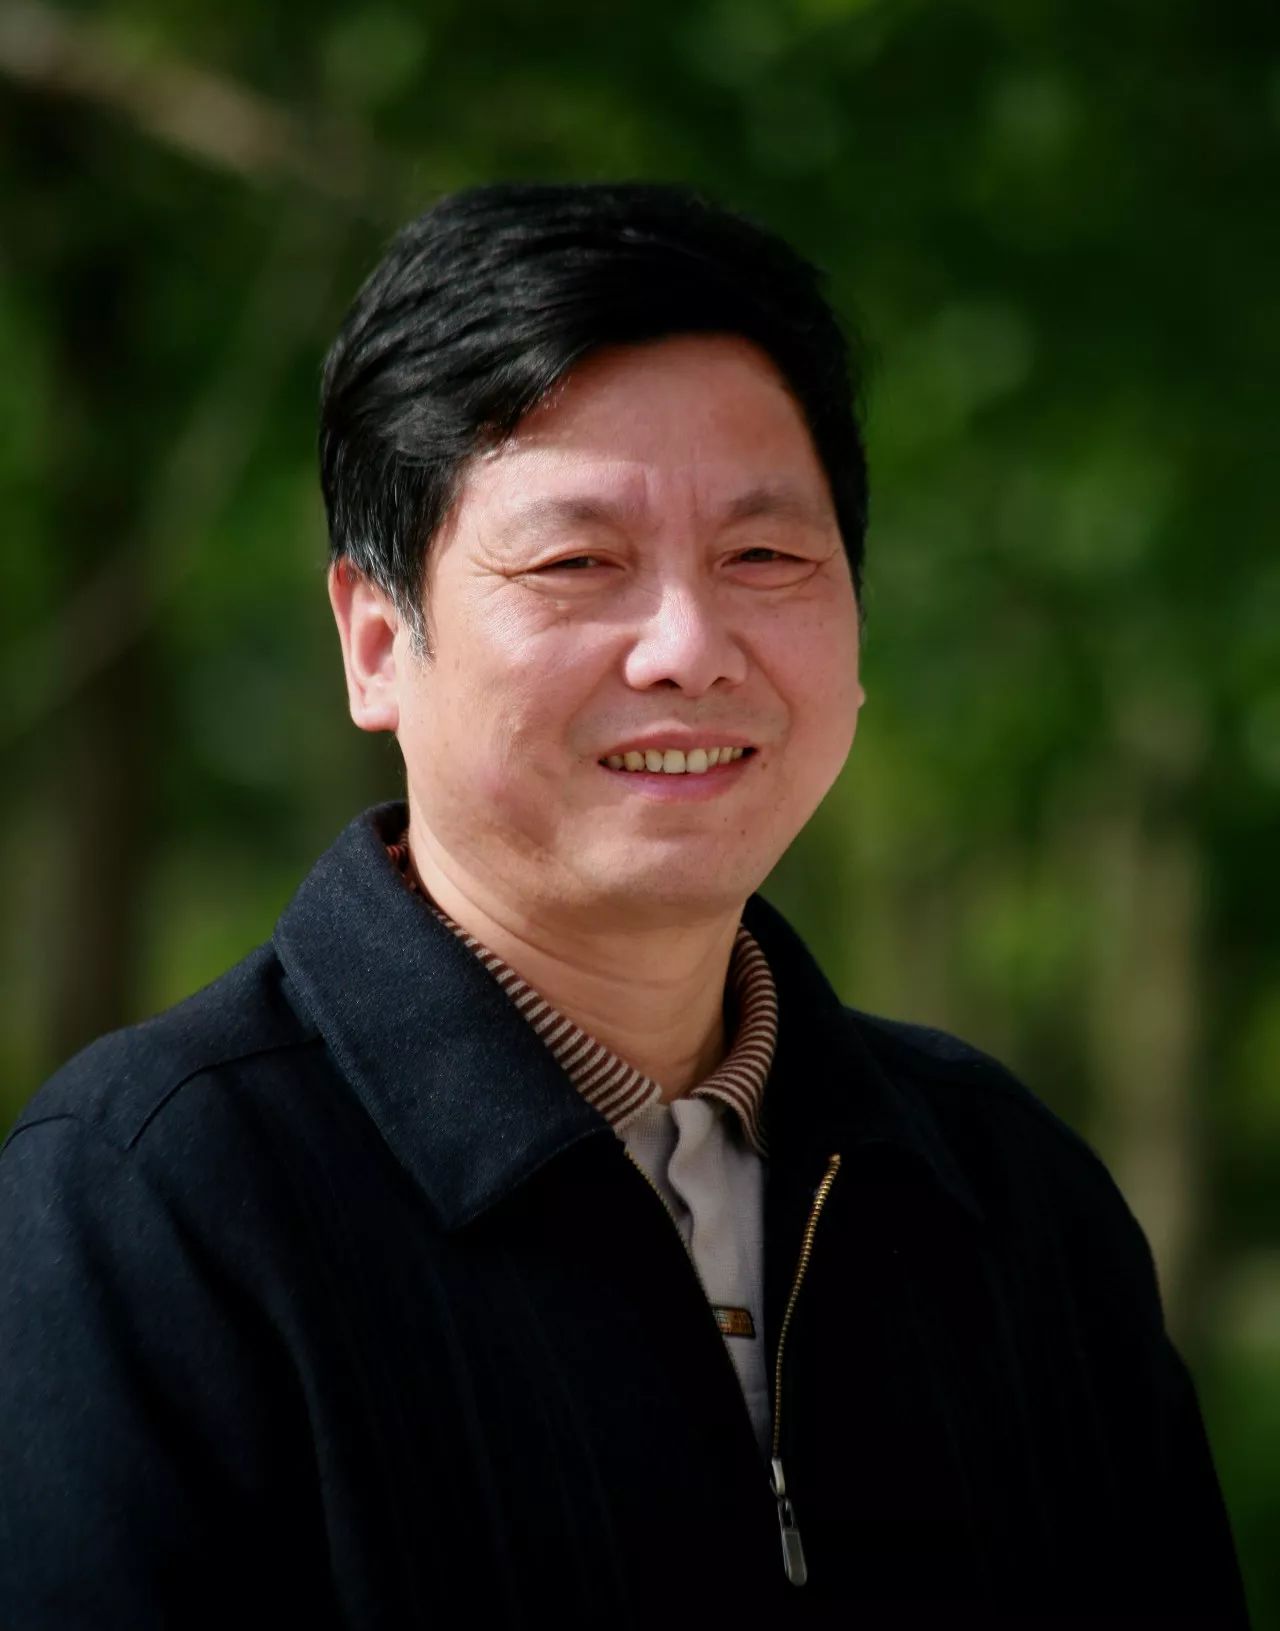 华杉:本名华少彬,湖北省作家协会会员,曾获第六届湖北文学奖提名奖